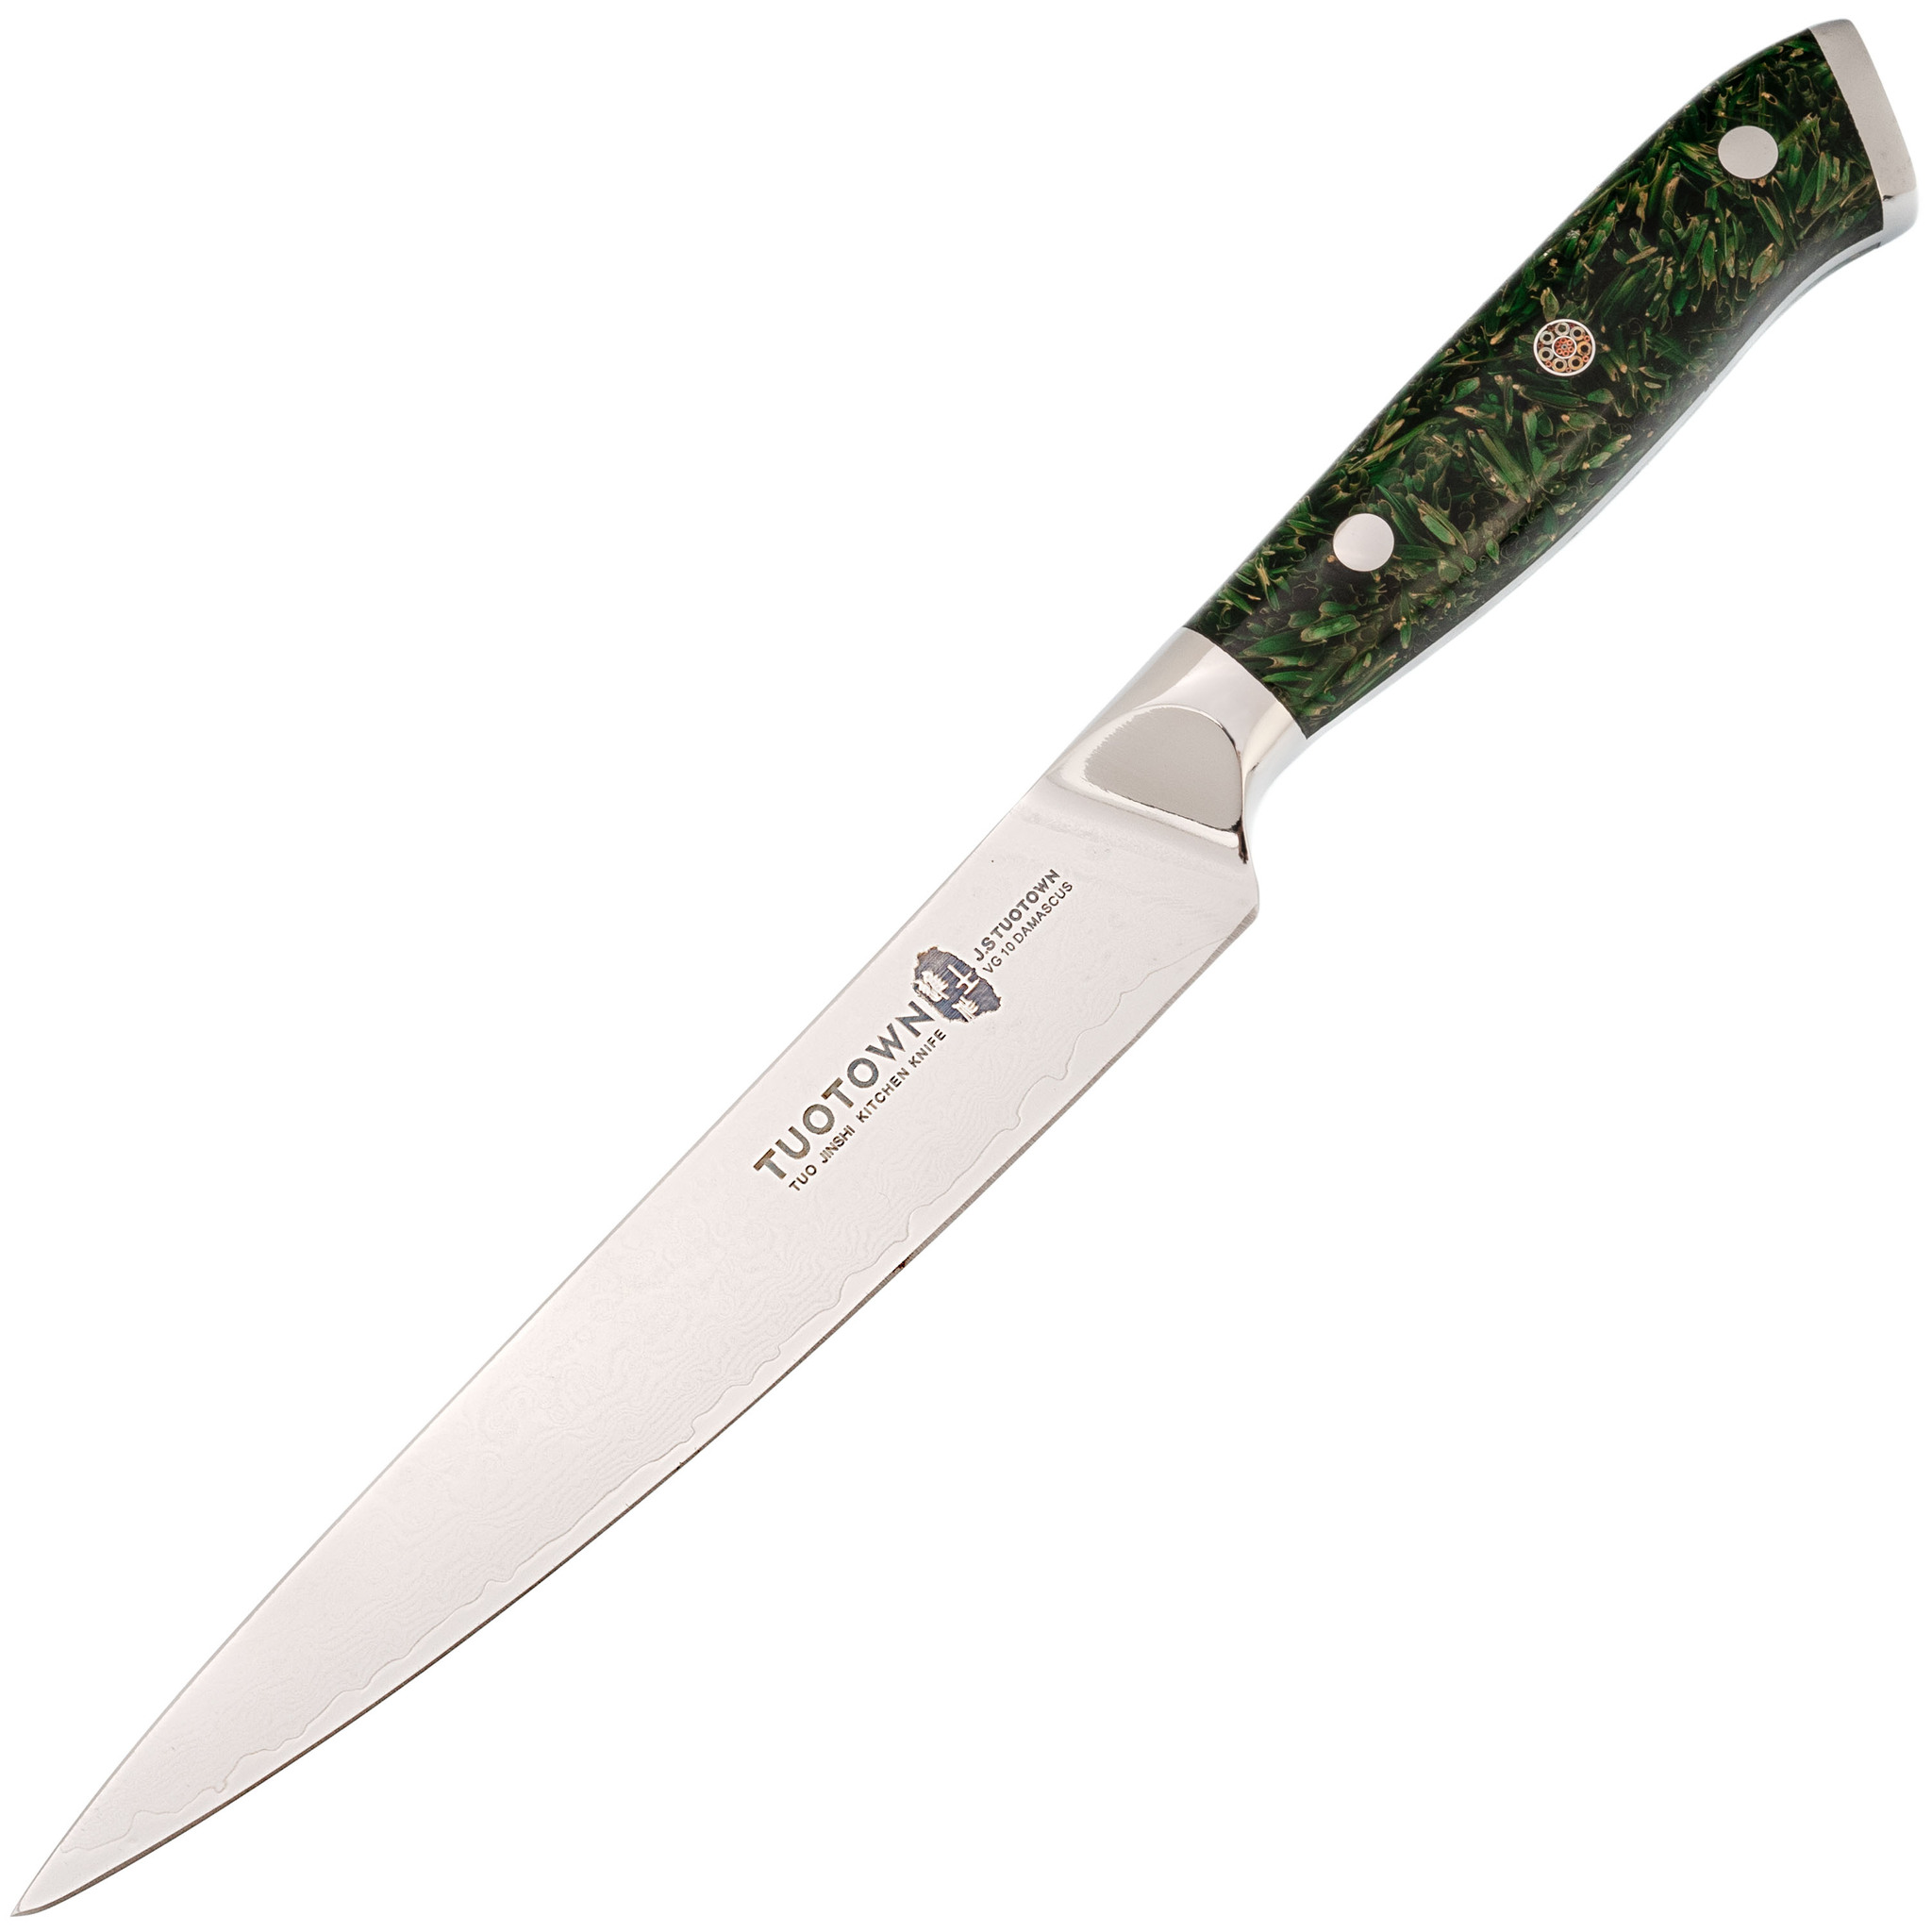 Кухонный нож Tuotown, сталь VG10, обкладка Damascus, рукоять акрил, зеленый нож кухонный доляна venus лезвие 9 см